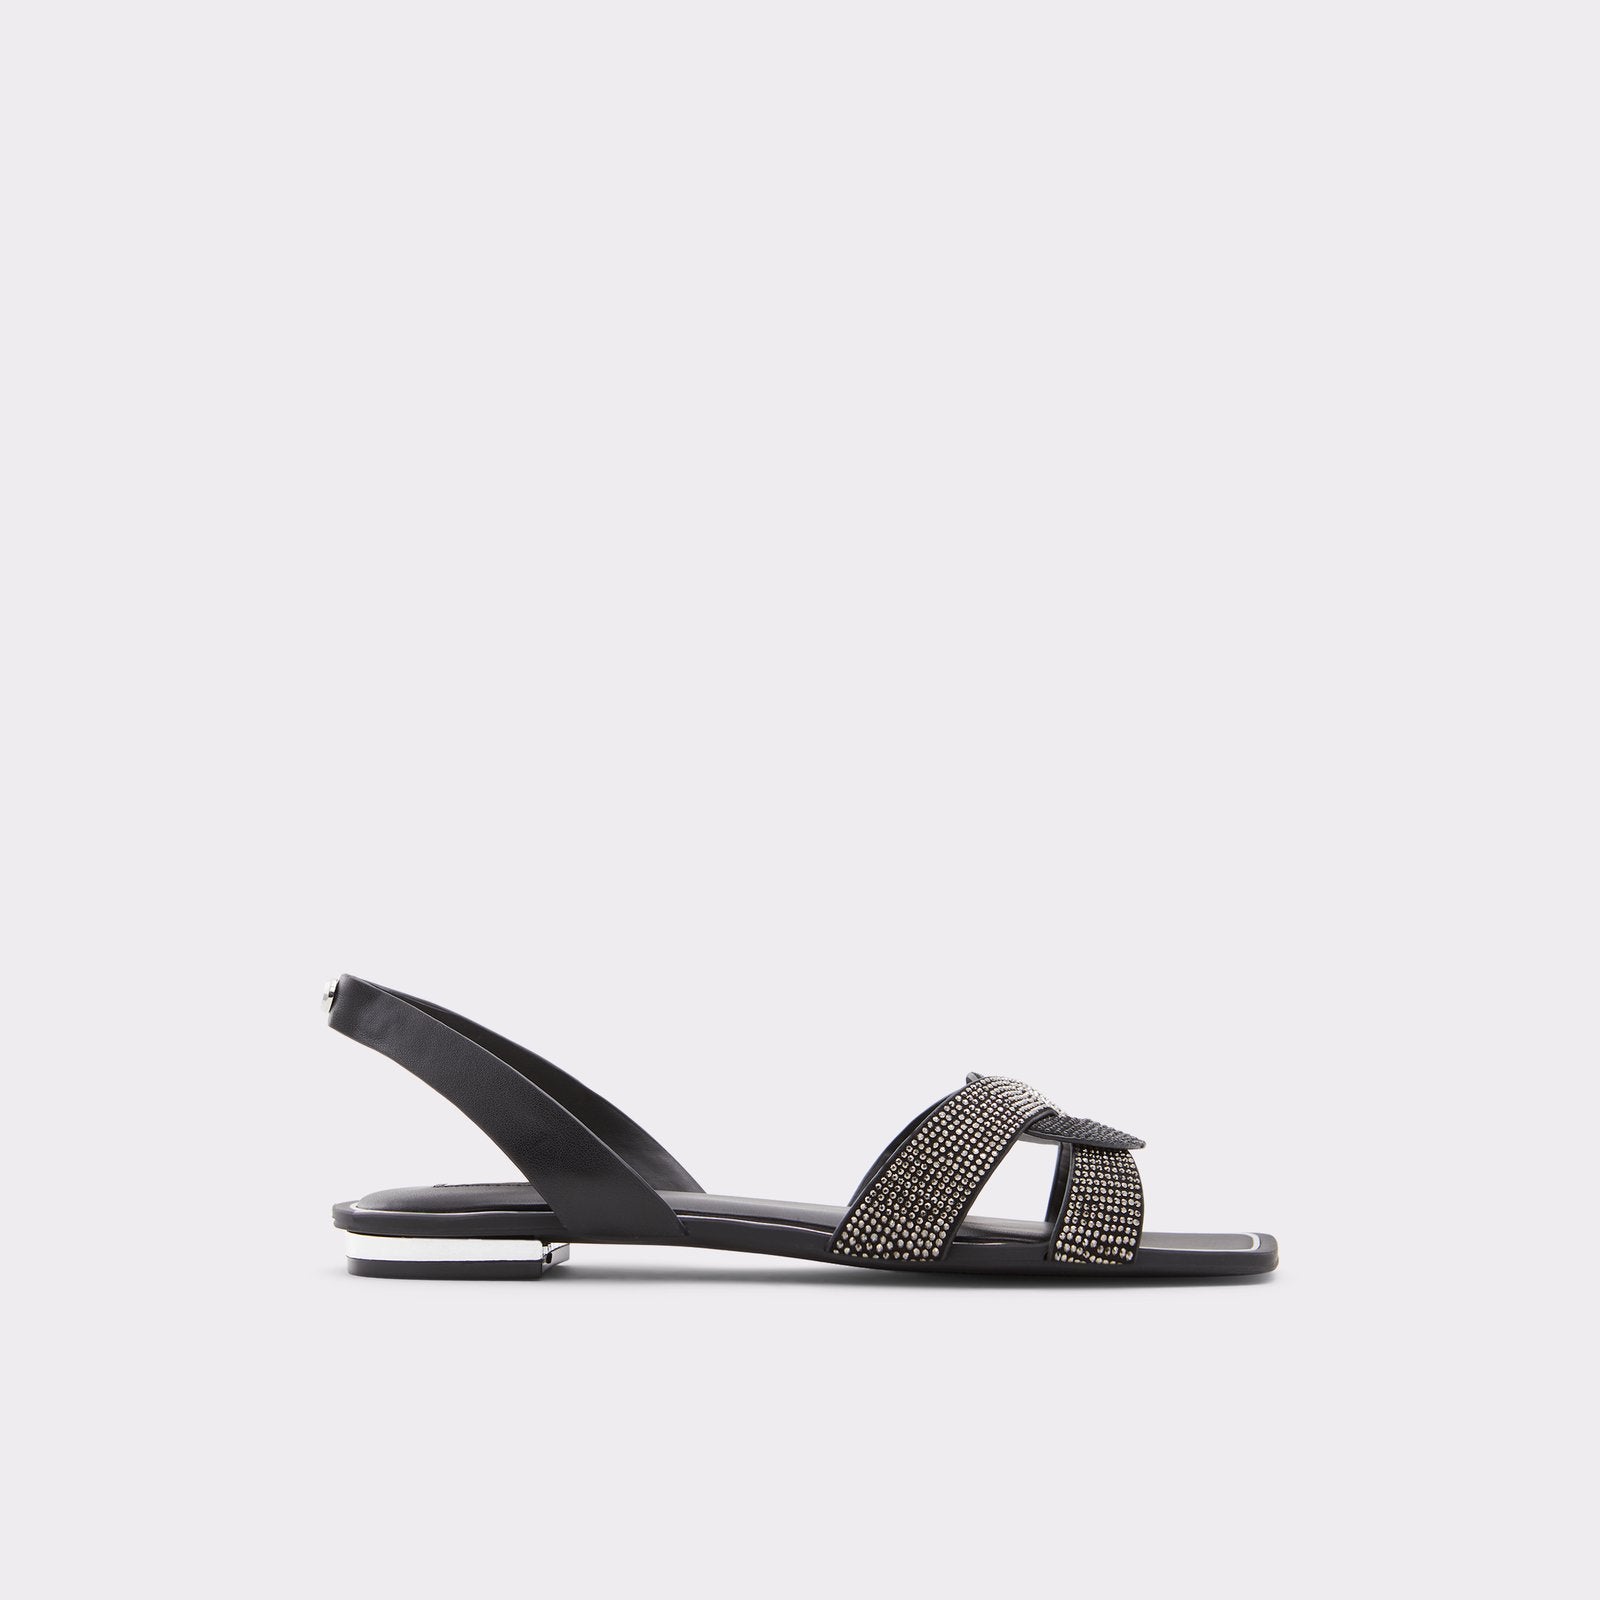 Anson Women Shoes - Black - ALDO KSA